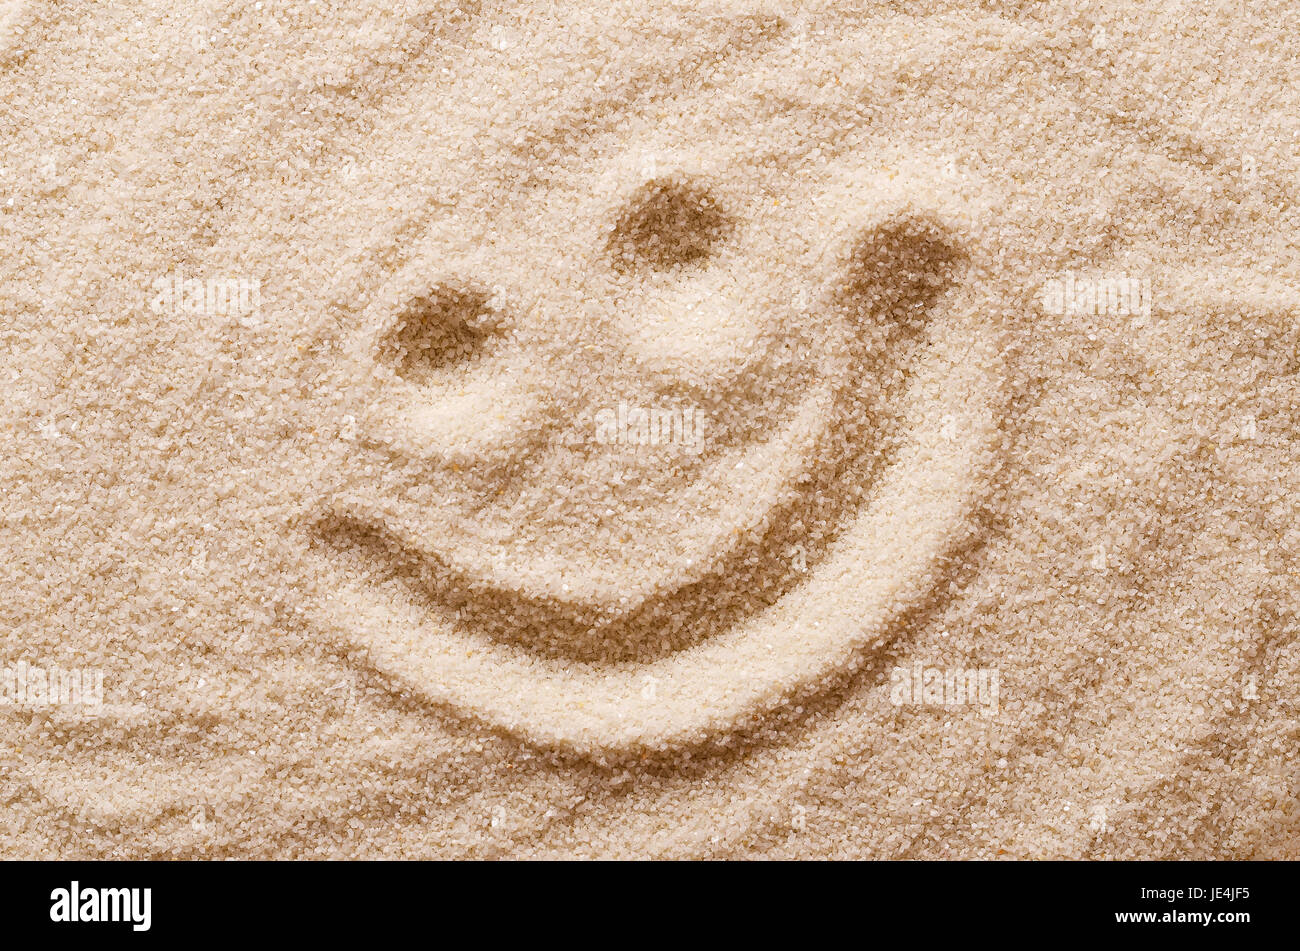 Felice volto sorridente nella sabbia. Gli occhi e la bocca disegnata con un dito asciutto ocherous sabbia. Foto macro close up dal di sopra. Foto Stock